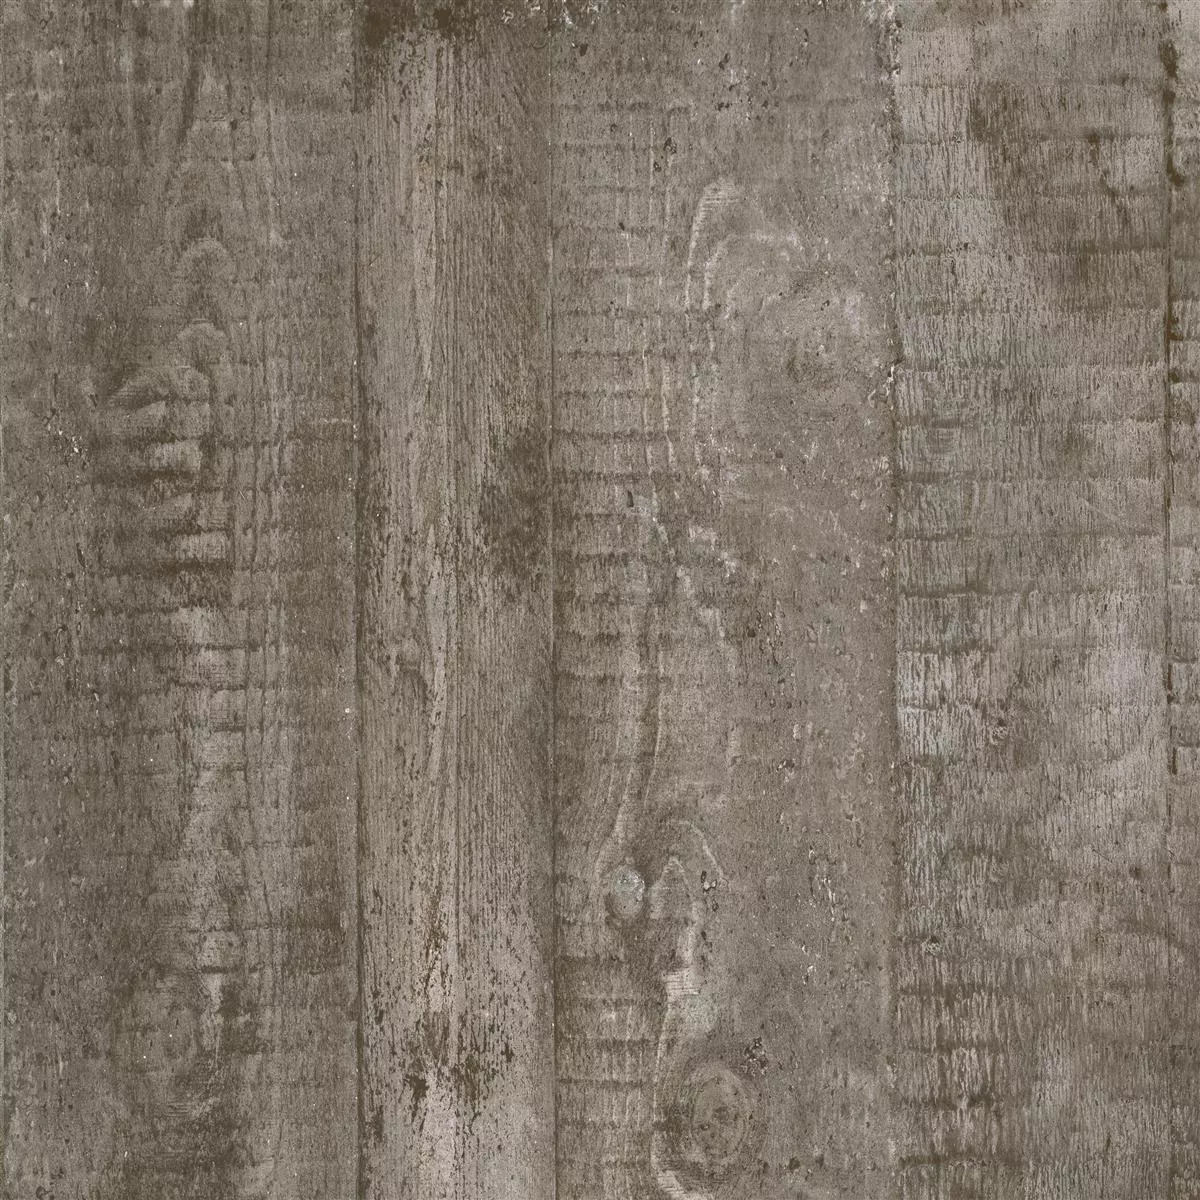 Płytki Podłogowe Gorki Wygląd Drewna 60x60cm Oszklony Brązowy